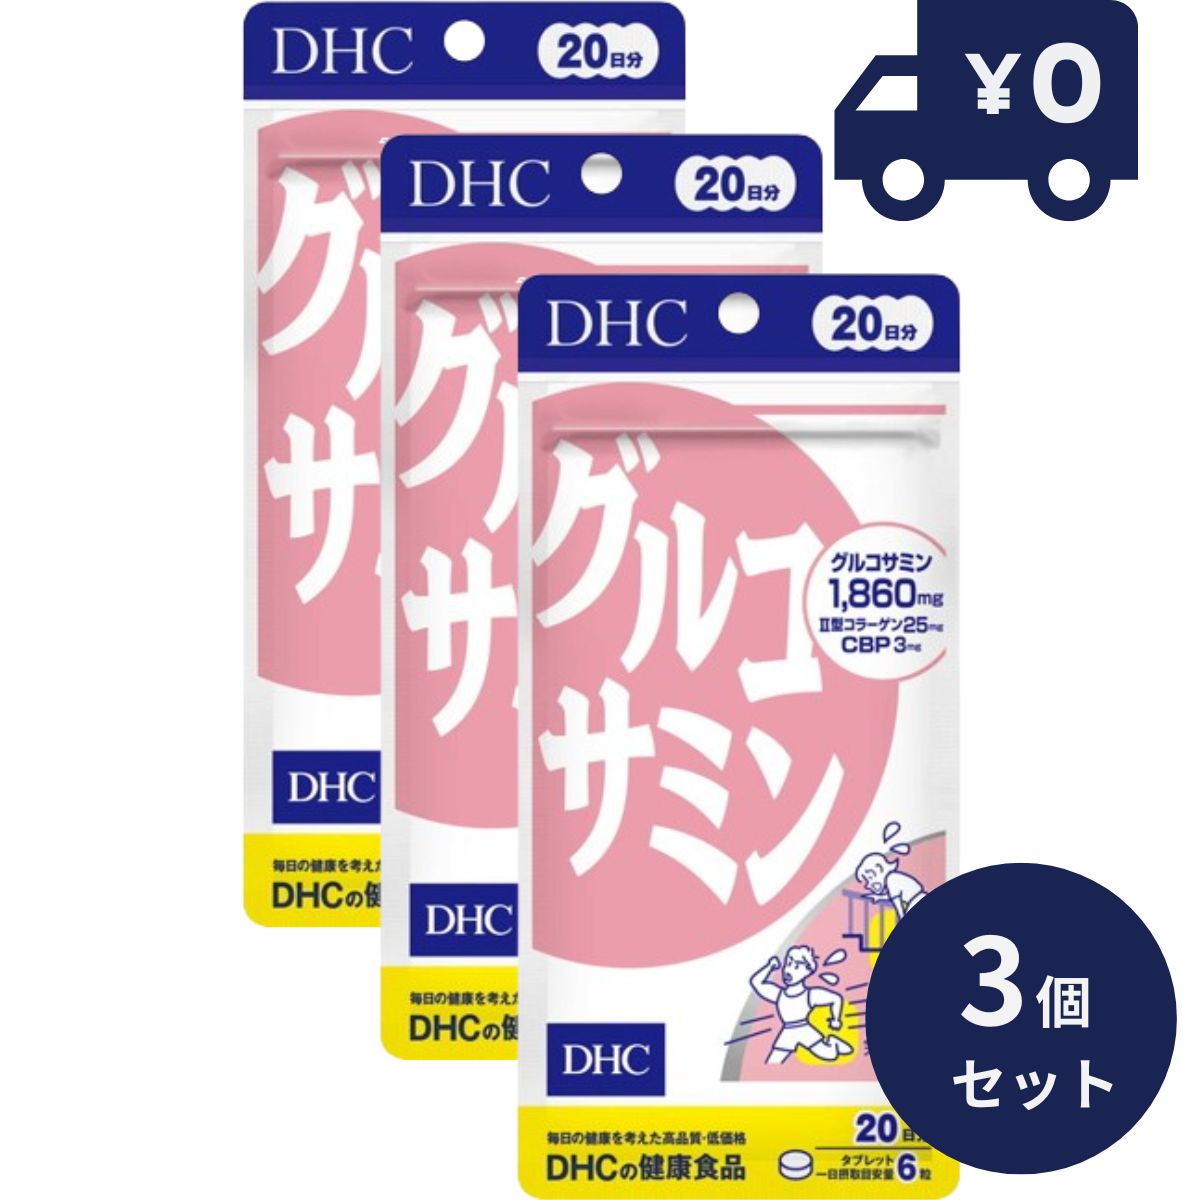 DHC グルコサミン 20日分(120粒) 3個セット ディーエイチシー サプリメント 健康食品 粒タイプ 人気 グルコサミン コンドロイチン 鮫 軟骨 関節痛